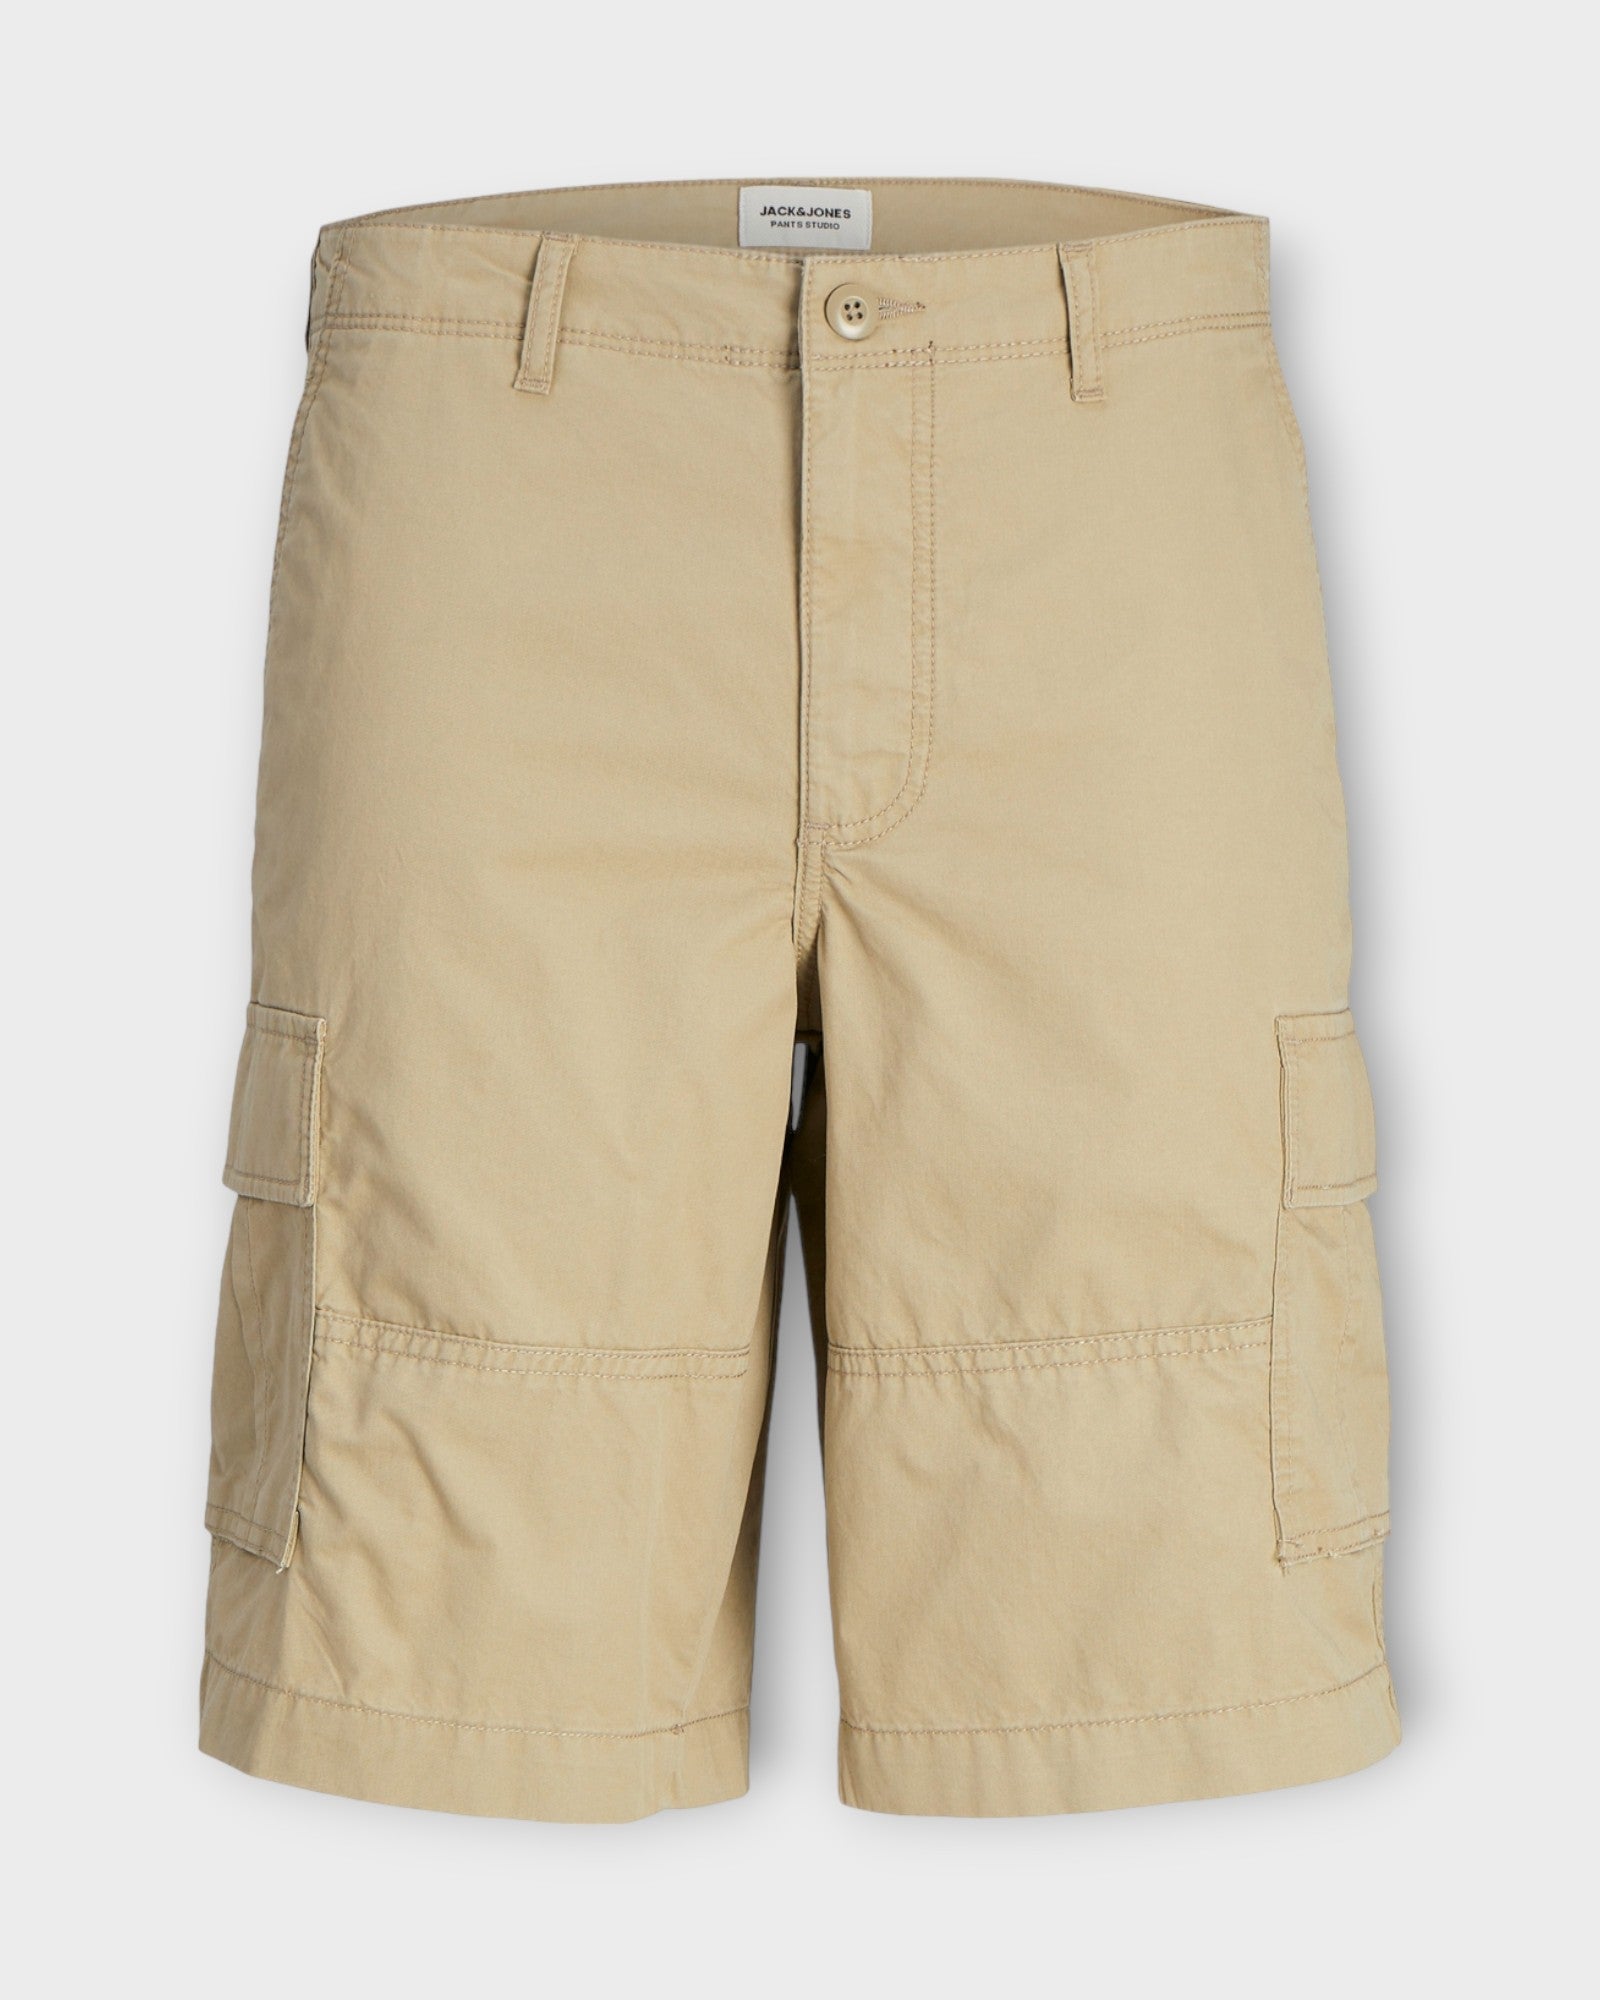 Cole Short Crockery fra Jack and Jones. Sandfarvet cargo shorts til mænd. Her set forfra.